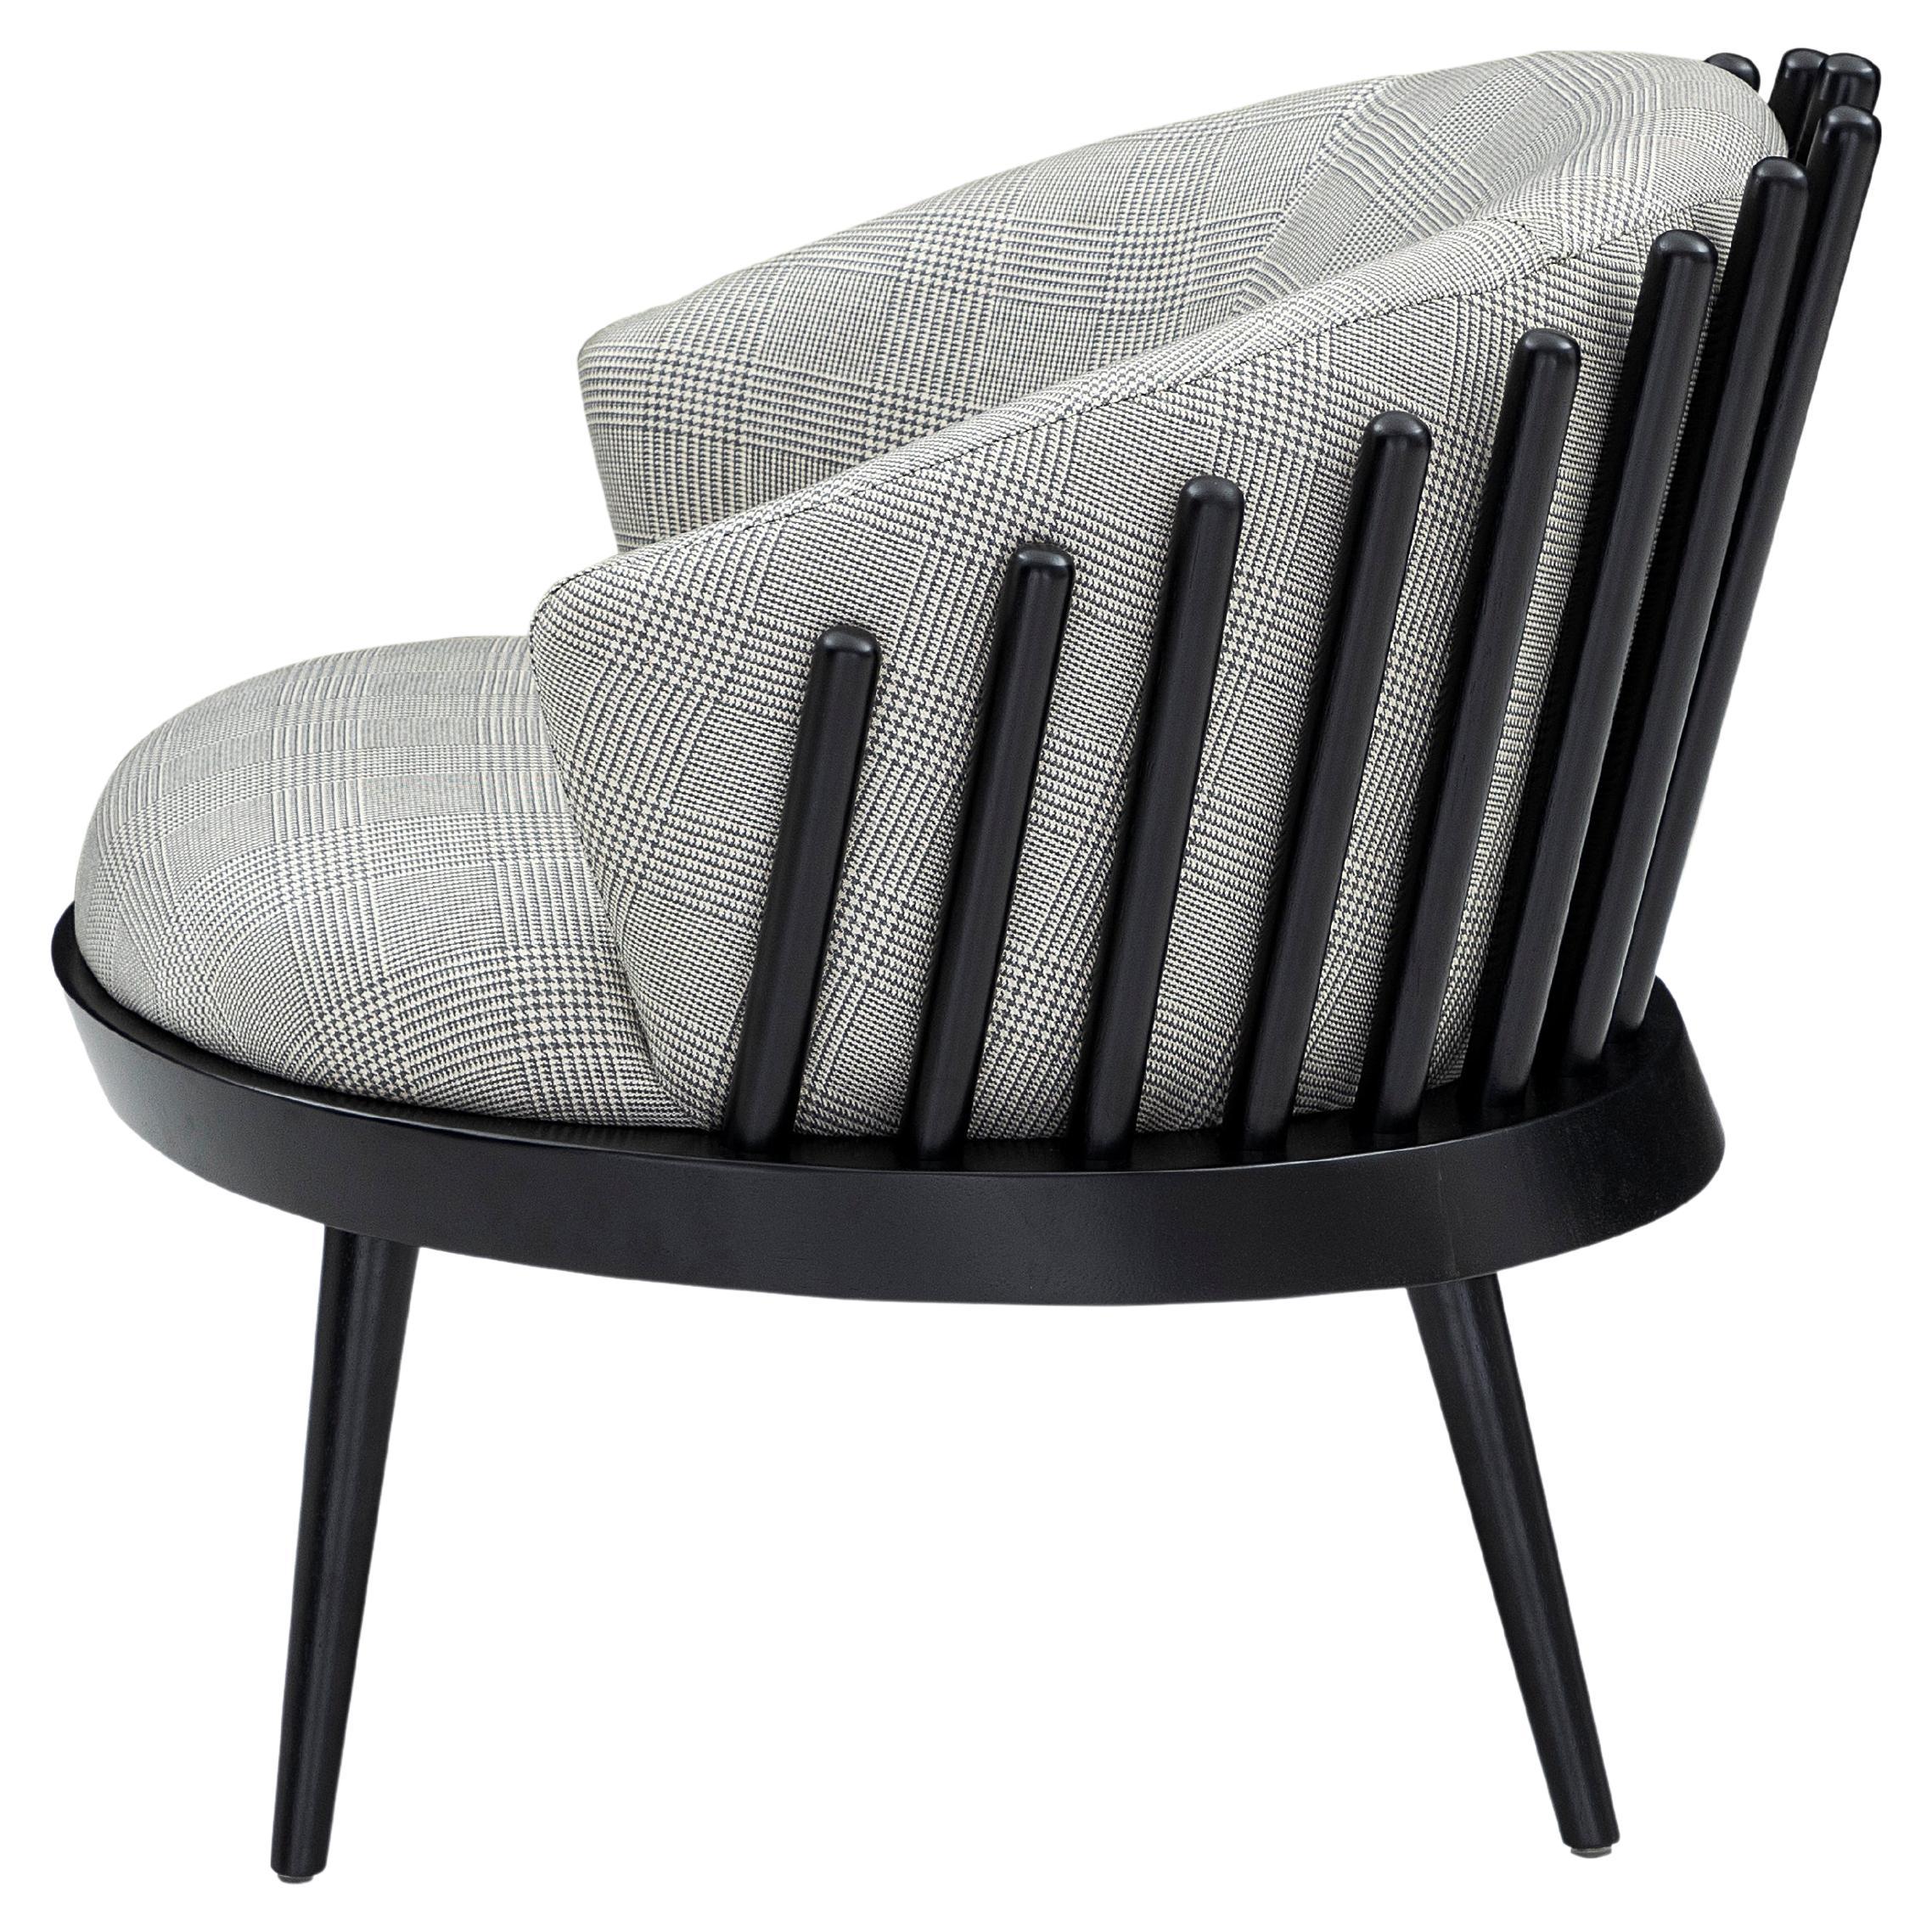 Das Uultis Design Team hat diesen schönen Fane Sessel entworfen, der mit einem schönen und weichen Karostoff gepolstert ist und eine schwarze Holzoberfläche aufweist. Diese schöne Kreation bietet mit ihren Sitz- und Rückenkissen einen perfekten,